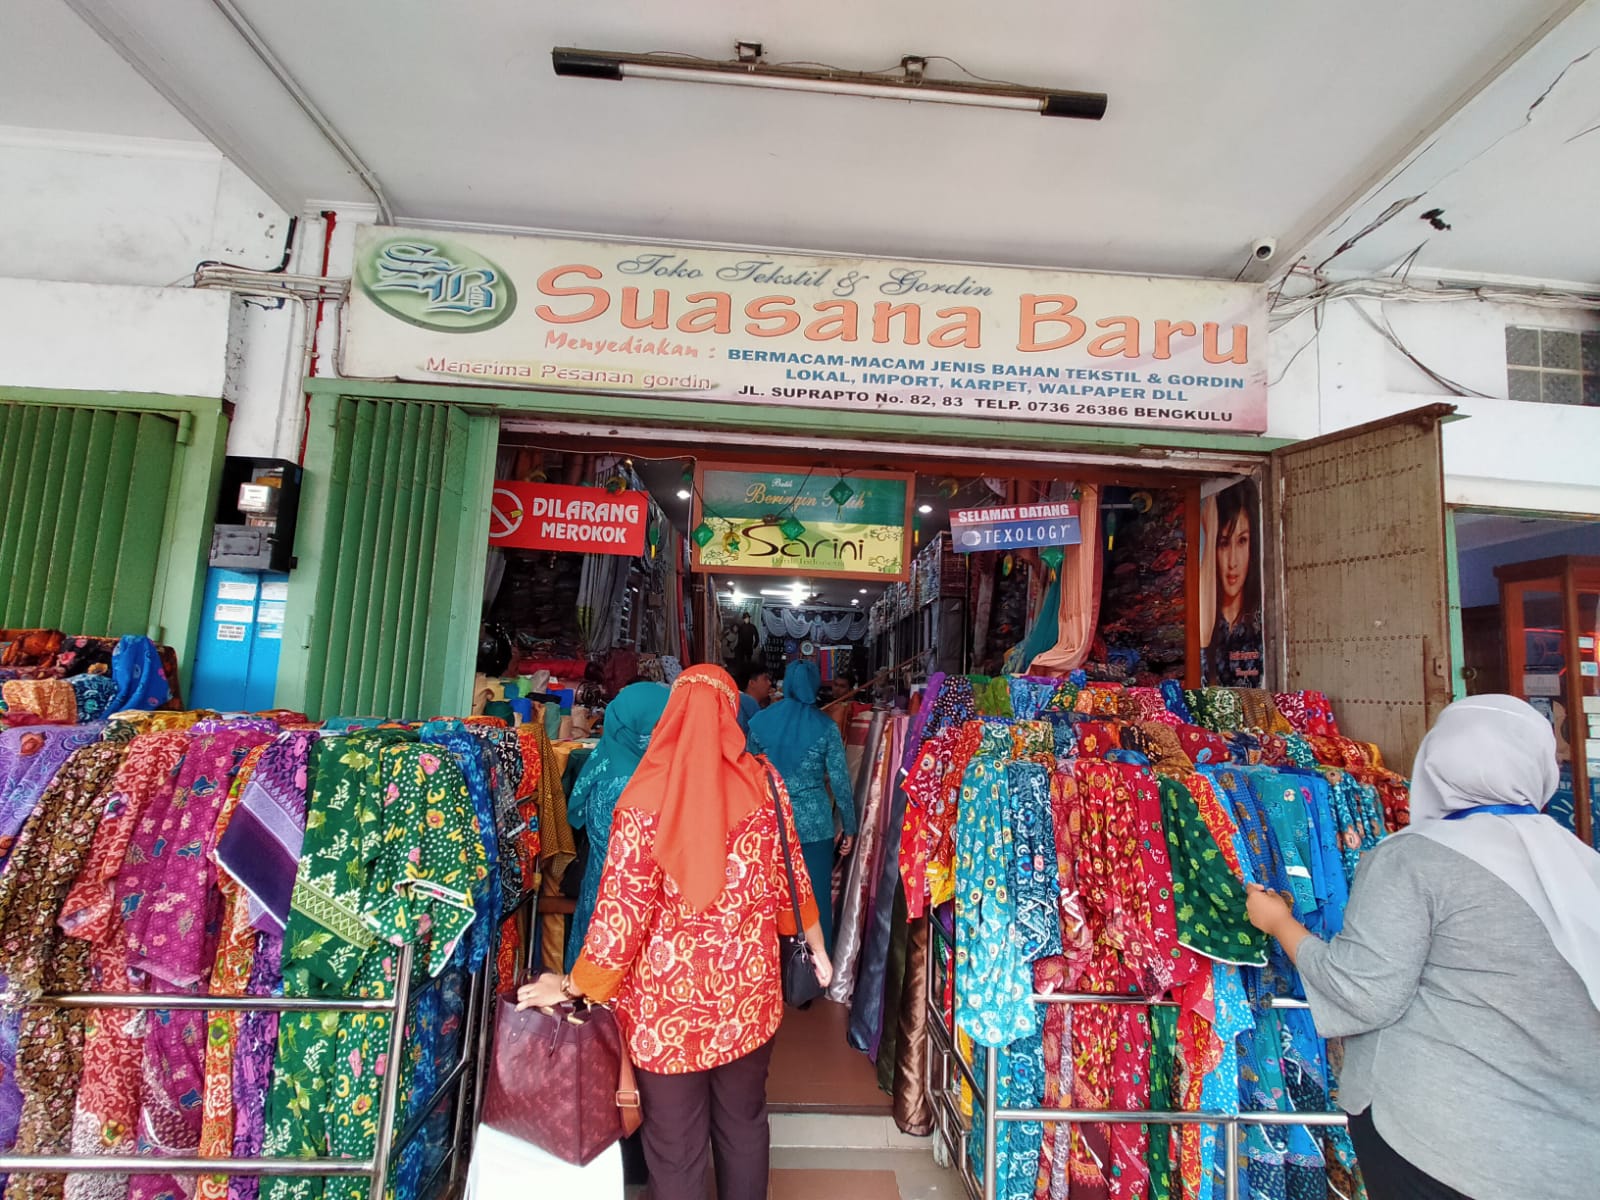 Suasana Baru, Menjual Semua Jenis Tekstil Gorden Lokal dan Impor